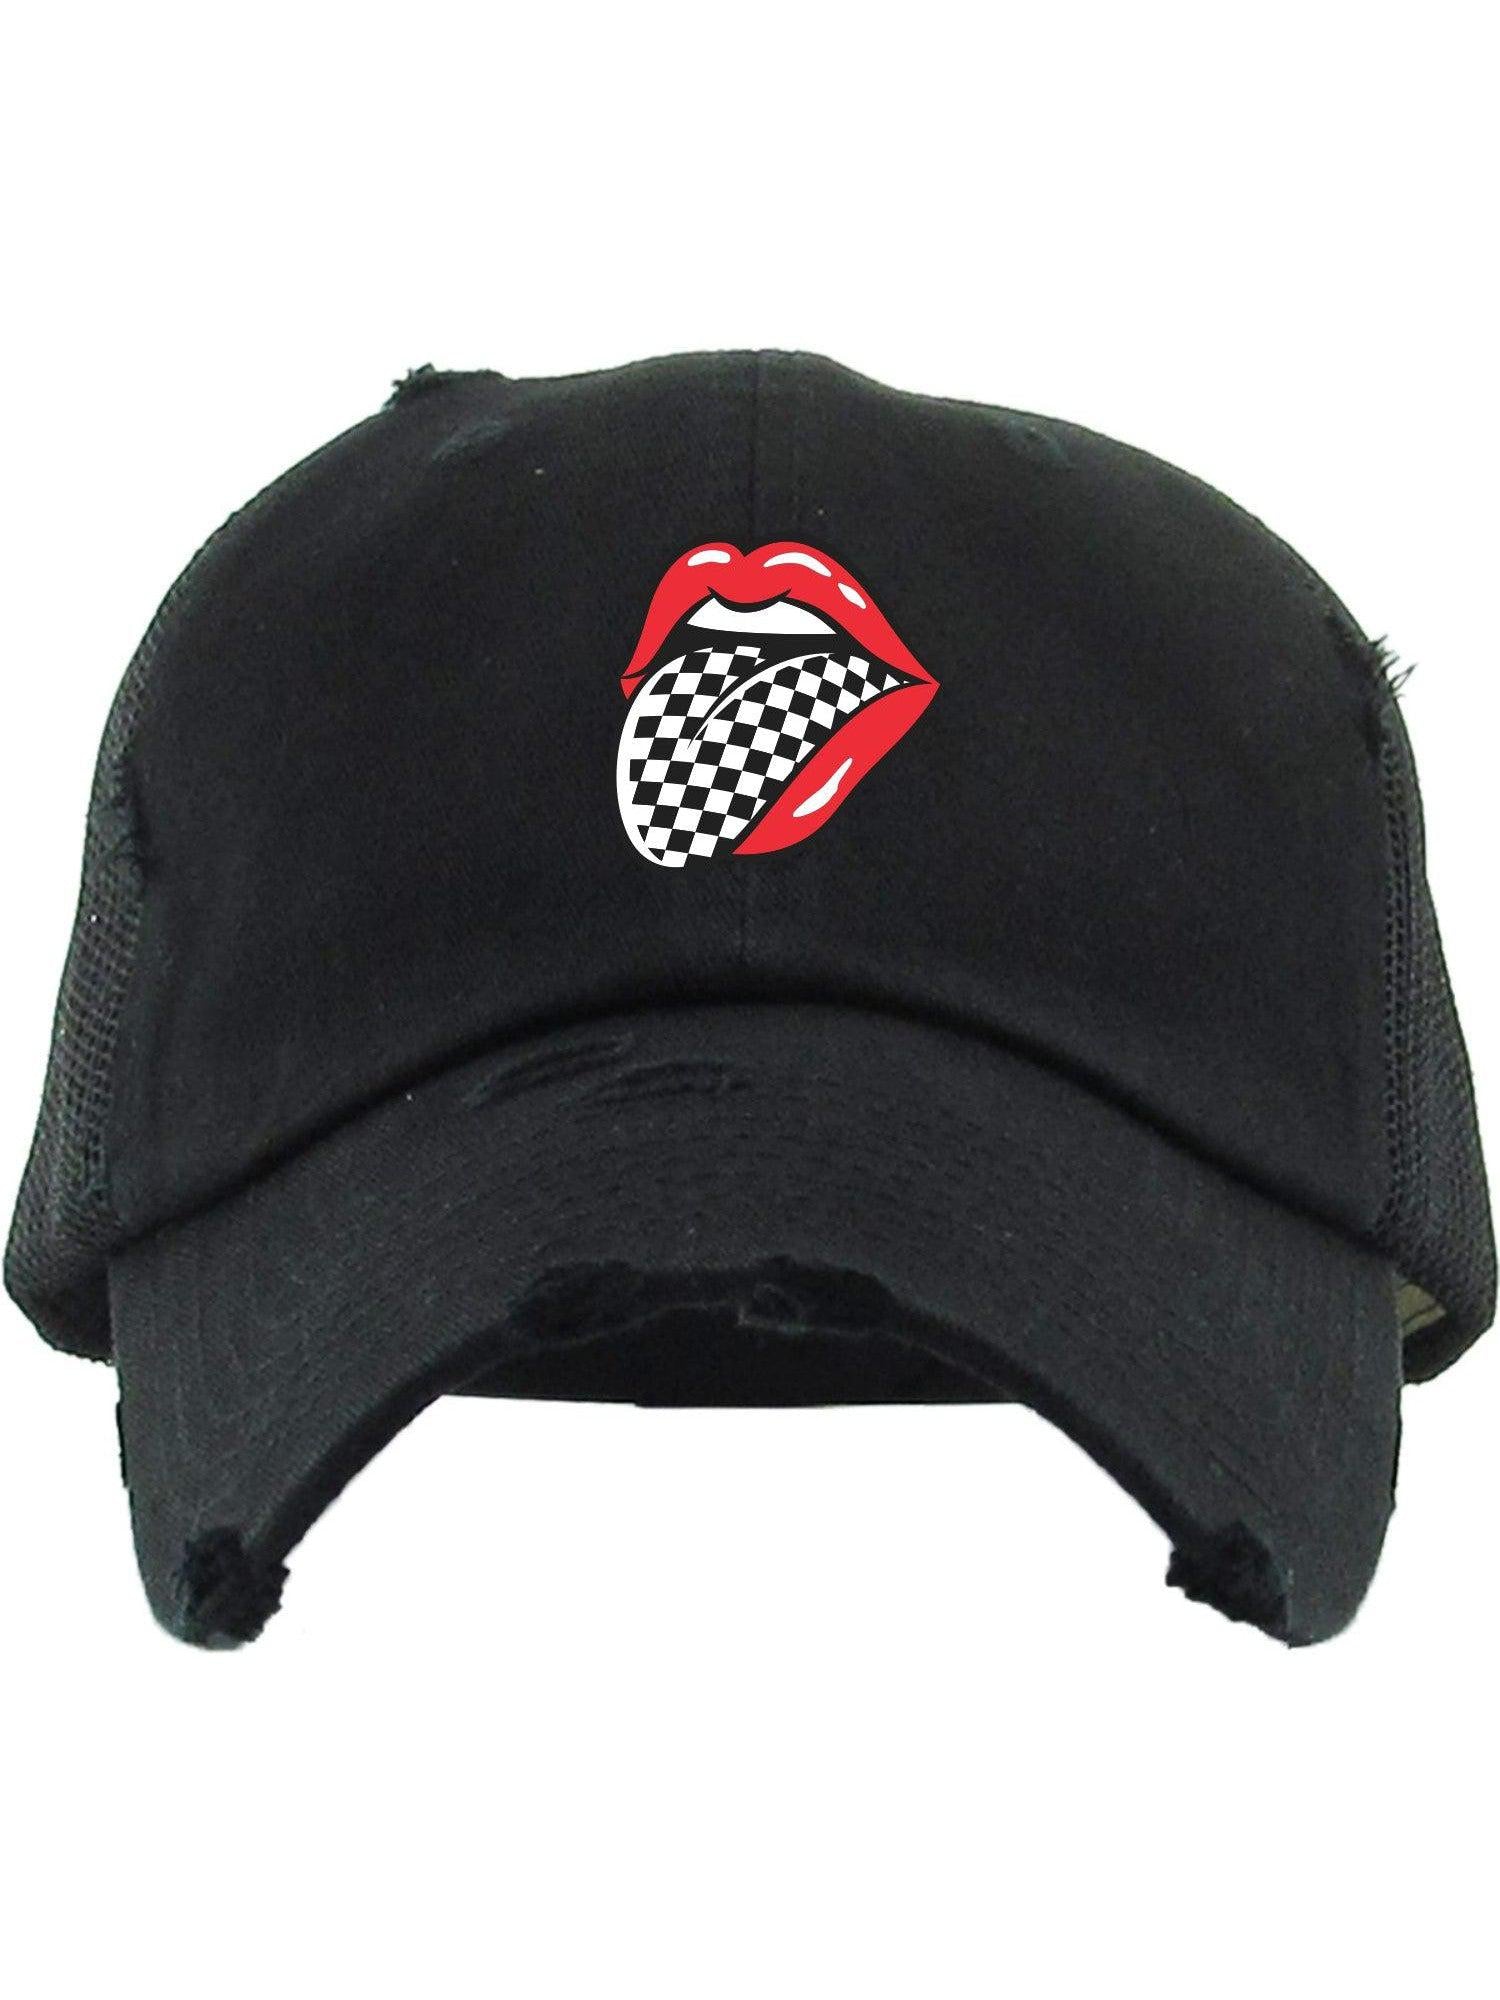 Checkered Tongue Hat